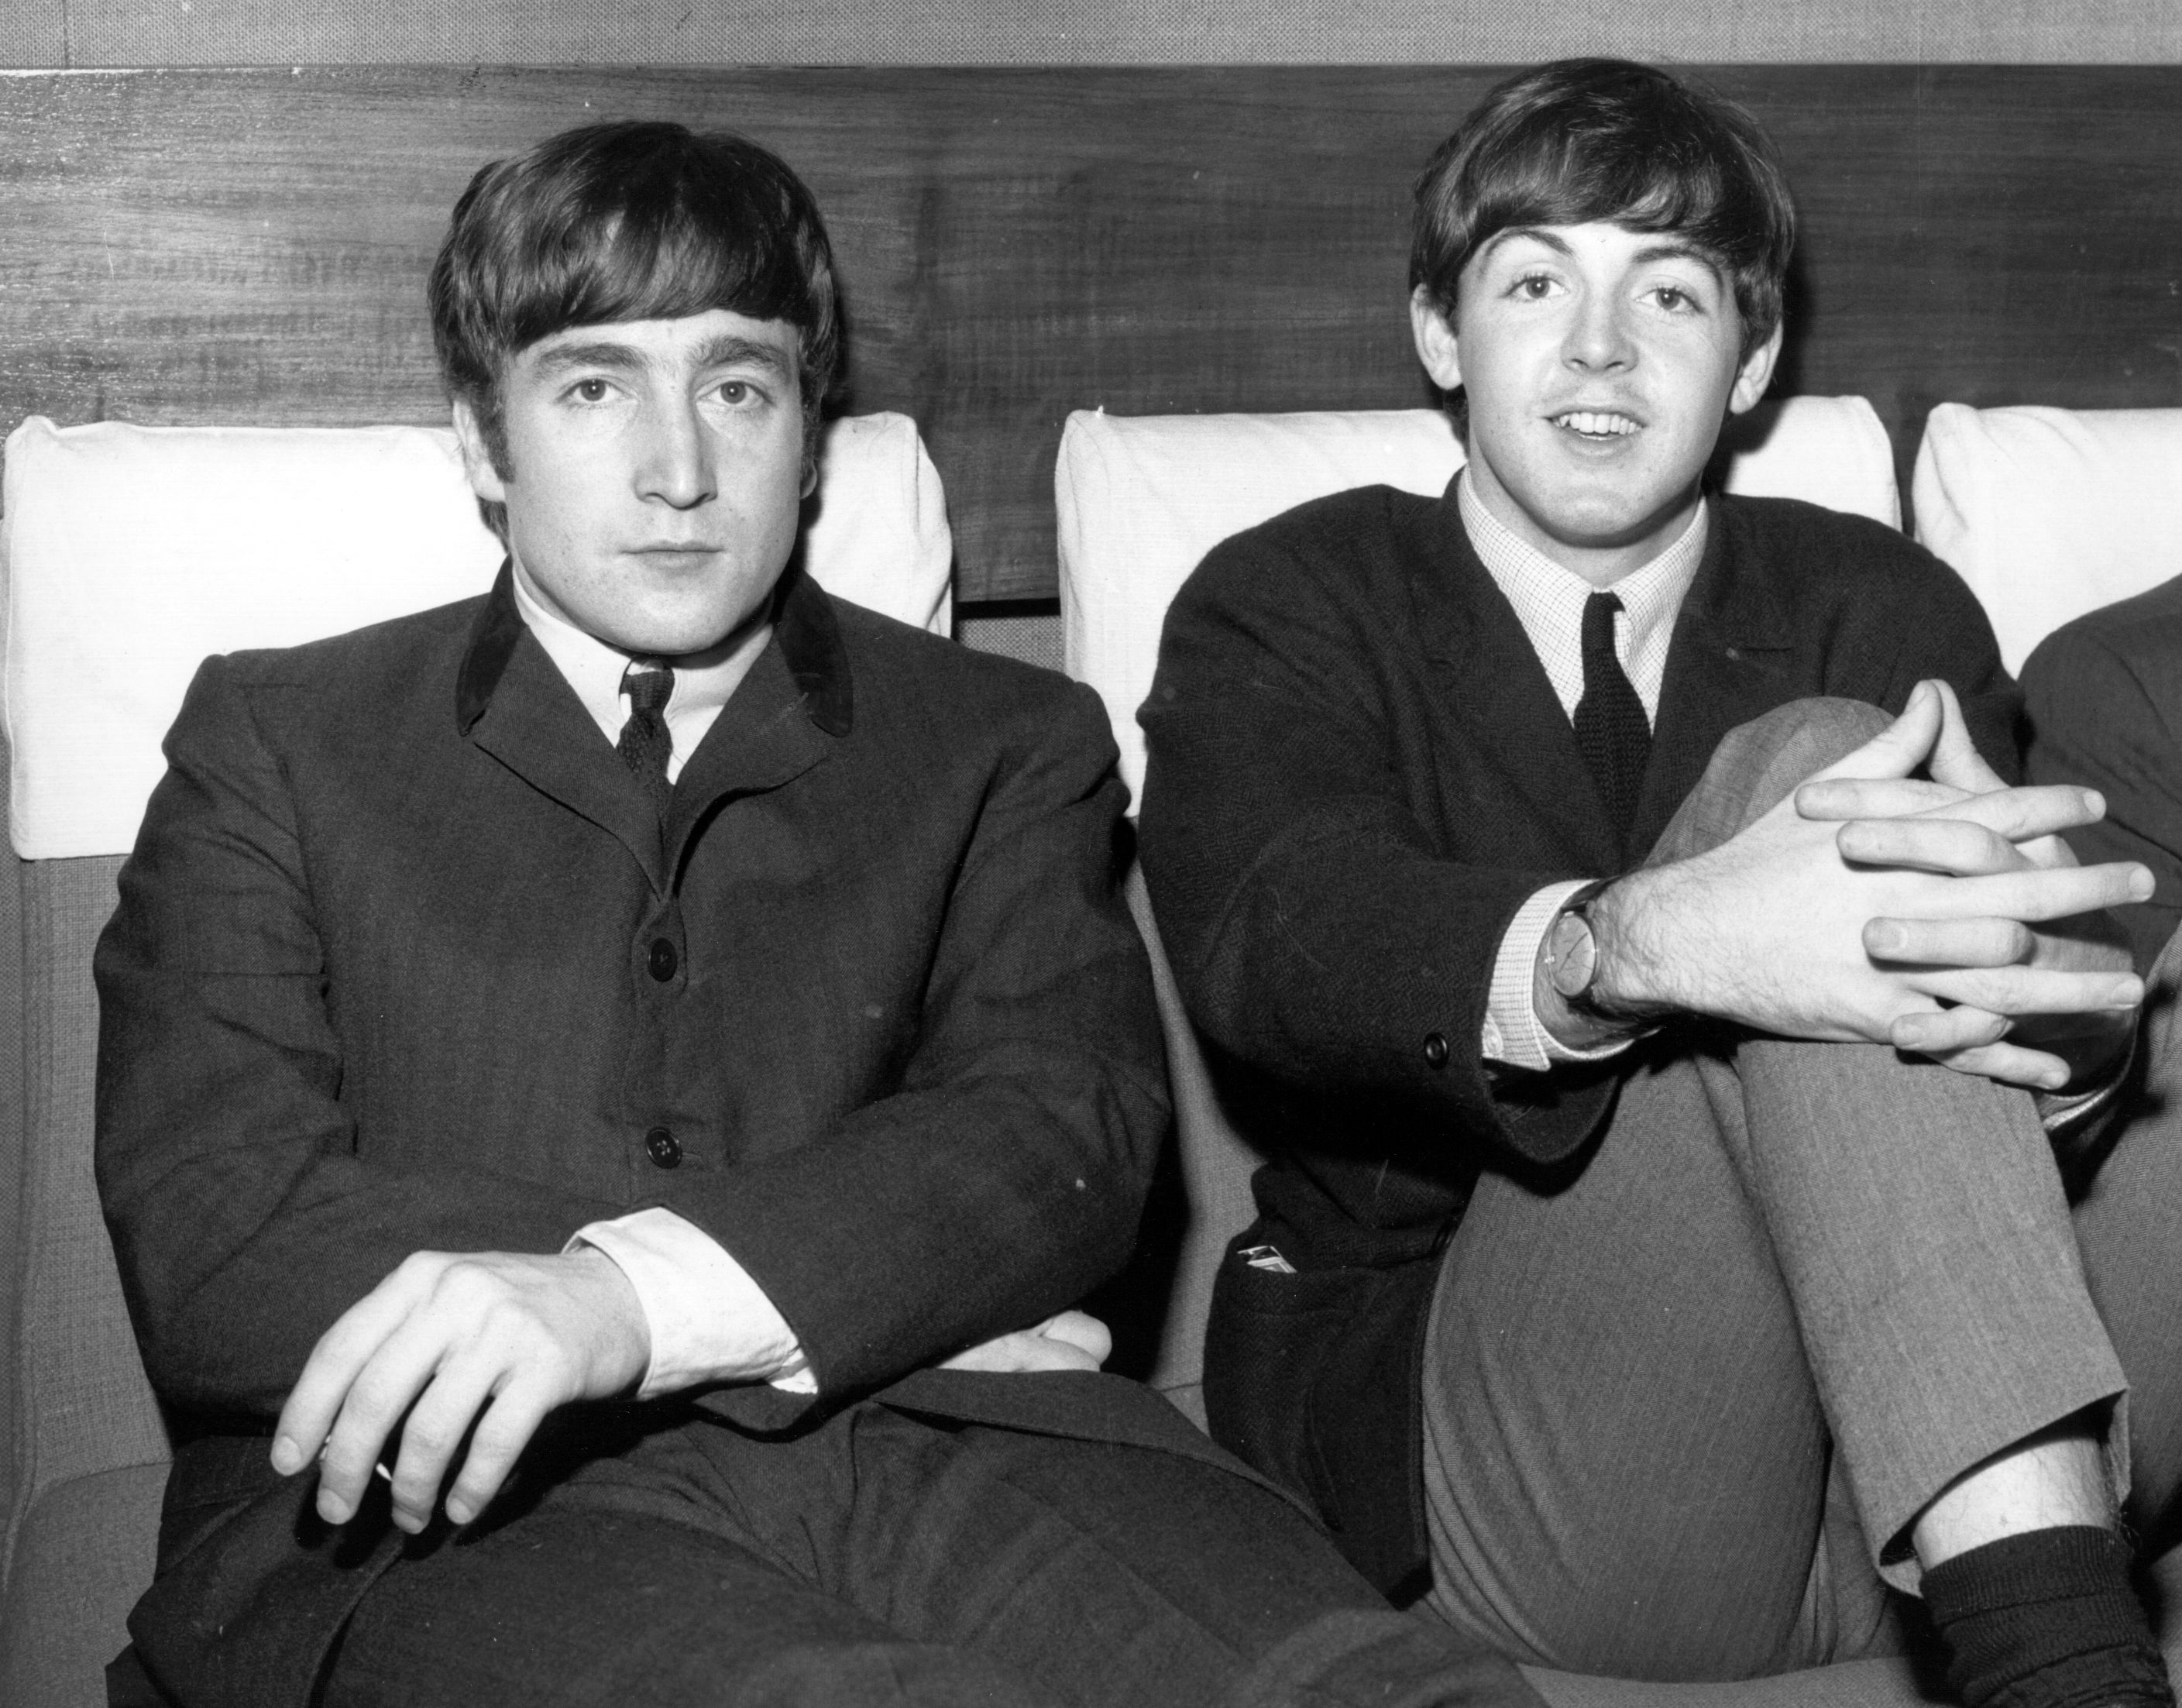 The Beatles' John Lennon and Paul McCartney sitting